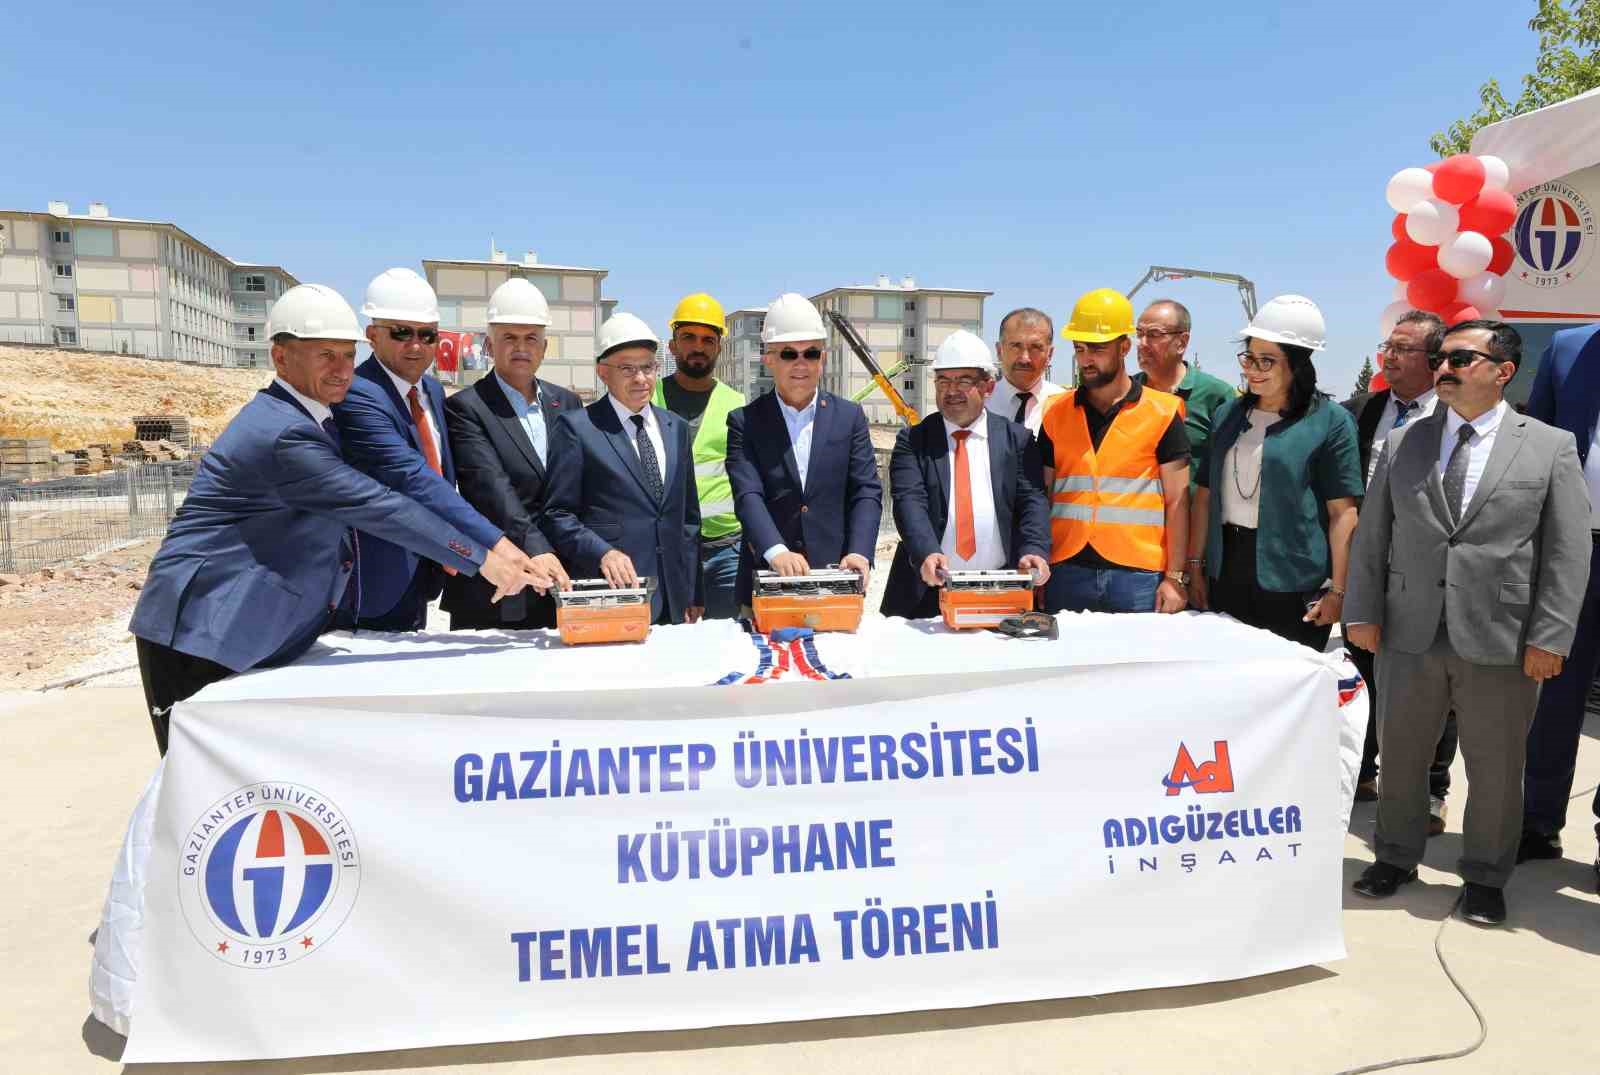 Gaziantep Üniversitesinde yeni kütüphane binasının temeli atıldı